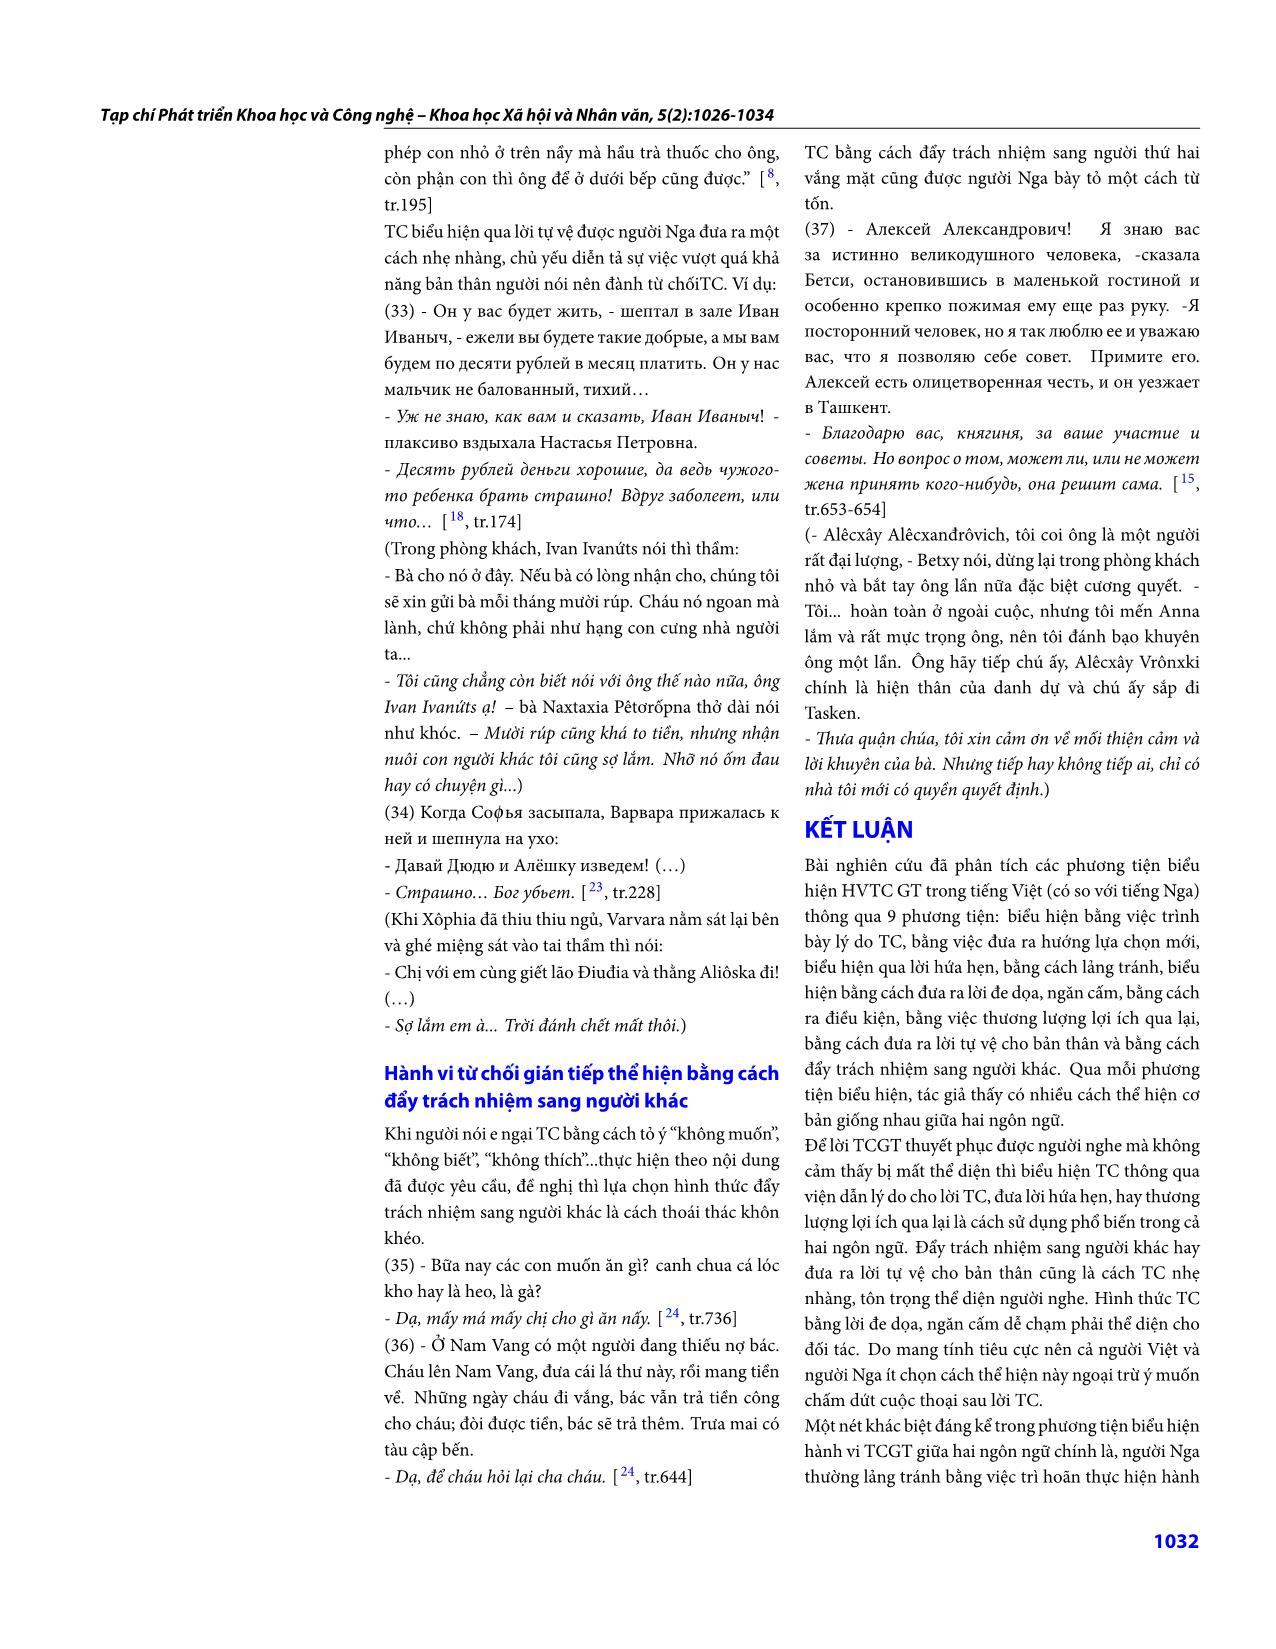 Những biểu hiện của hành vi từ chối gián tiếp trong tiếng Việt (có so với tiếng Nga) trang 7